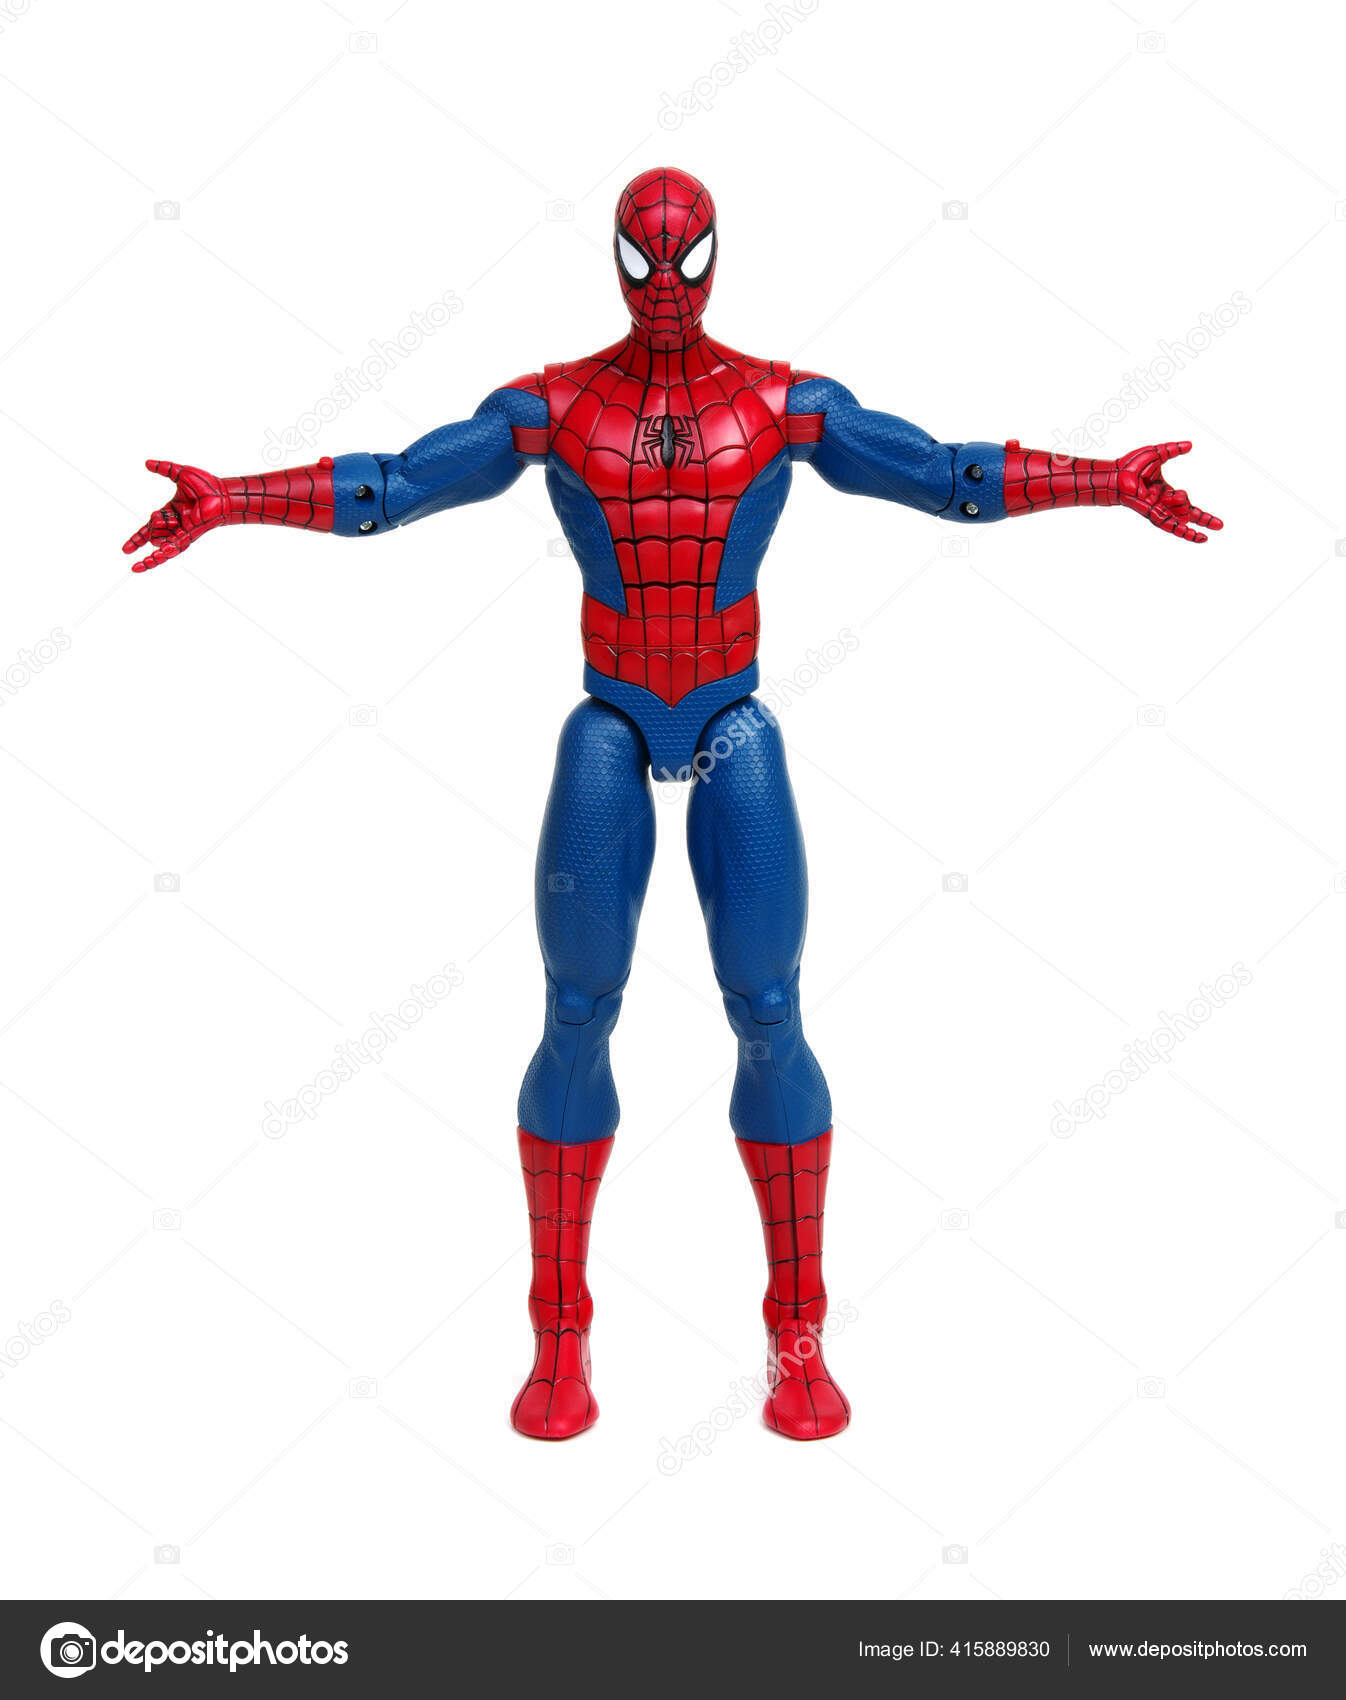 Đồ chơi Spiderman trên nền trắng sẽ khiến trái tim của bạn tan chảy khi được chứng kiến sự đáng yêu và ngộ nghĩnh của các nhân vật siêu anh hùng Spiderman. Sản phẩm đồ chơi này kết hợp tuyệt vời giữa sự giải trí và sự phát triển trí não, sẽ trở thành món quà hoàn hảo cho con cái bạn hoặc chính bạn.